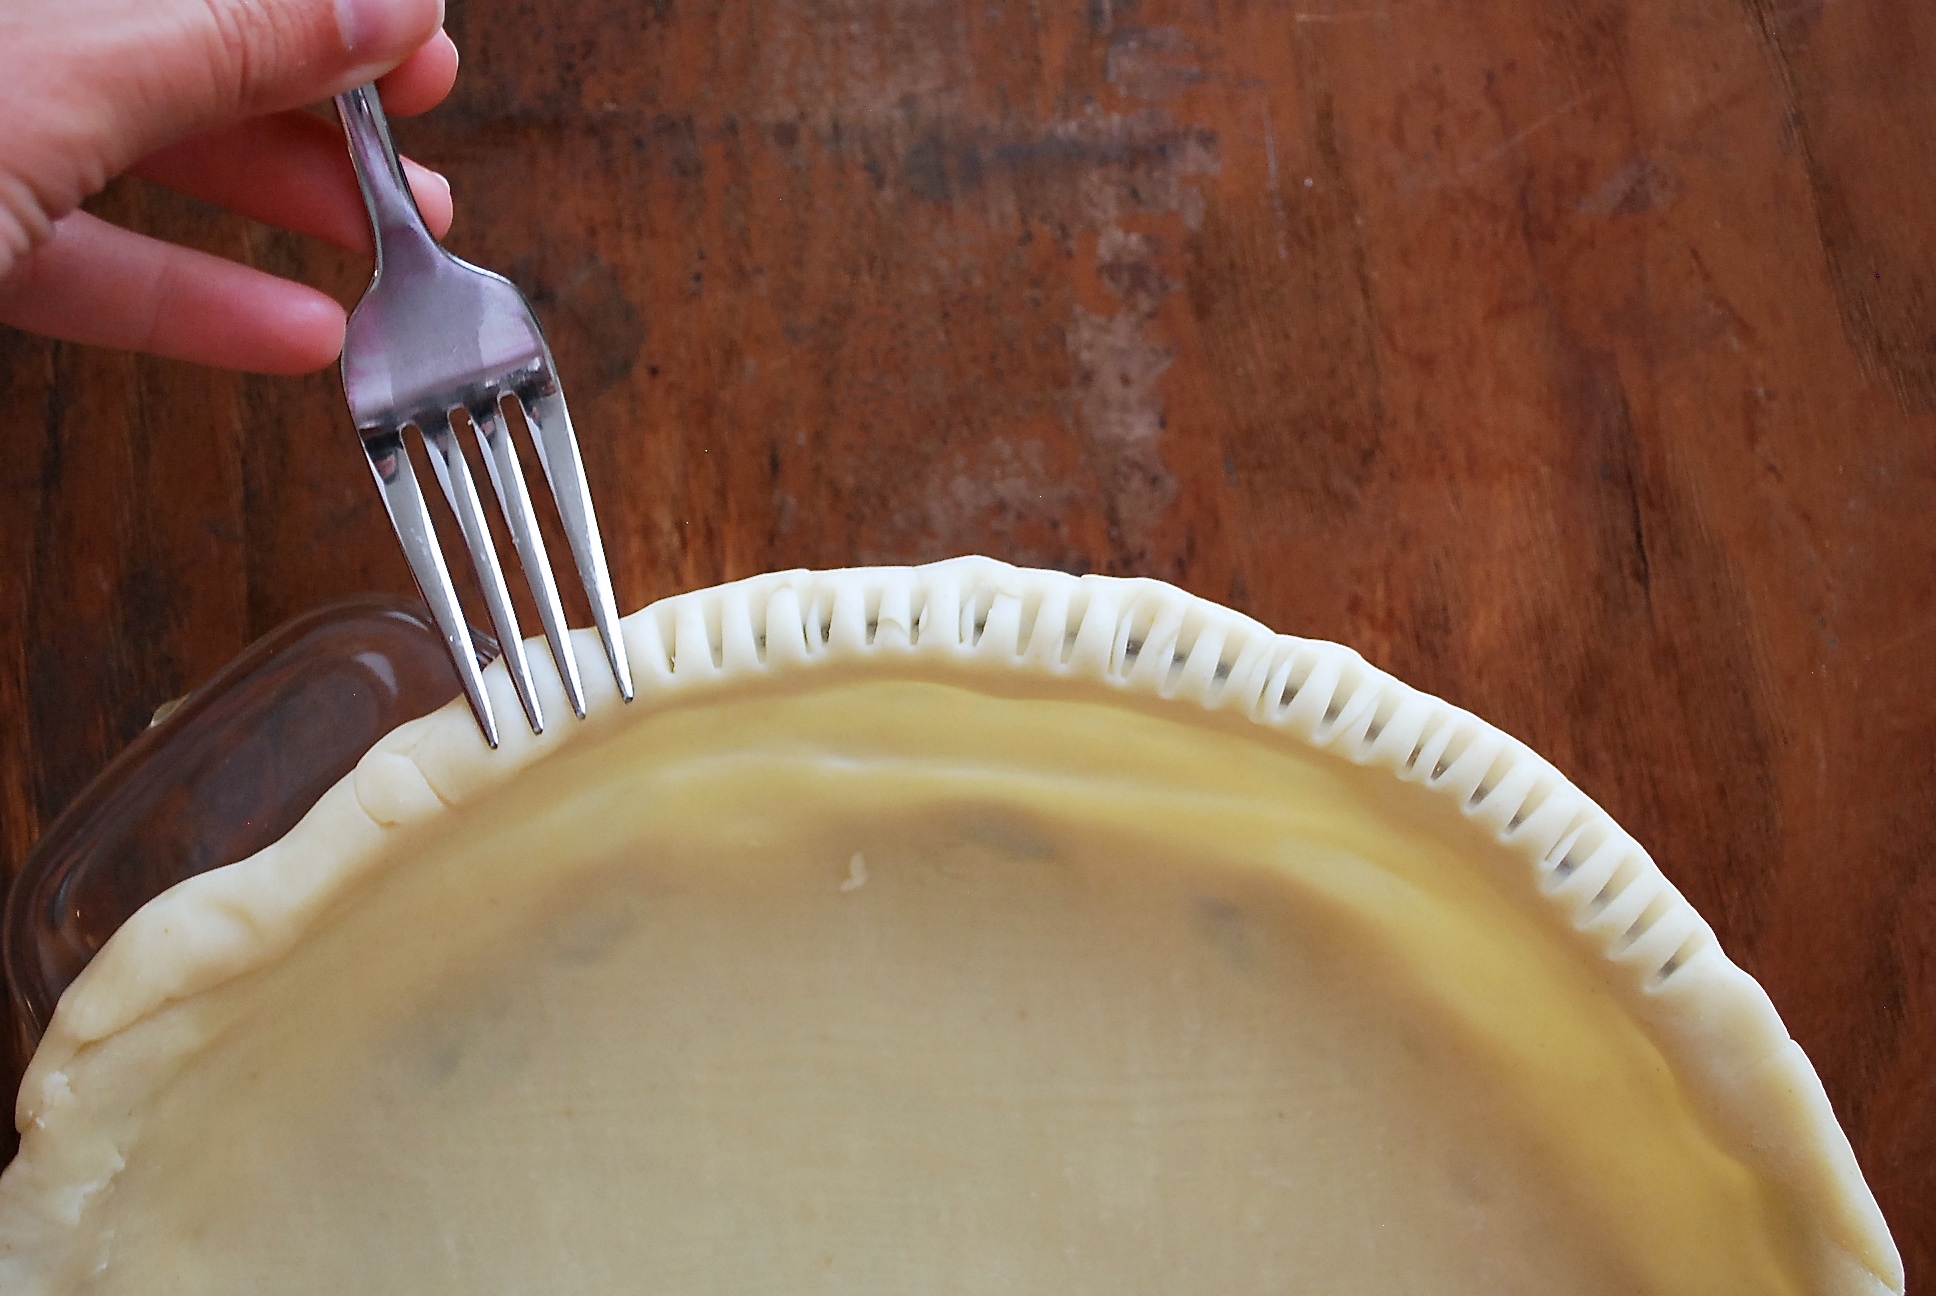 Pie crust basics via @kingarthurflour